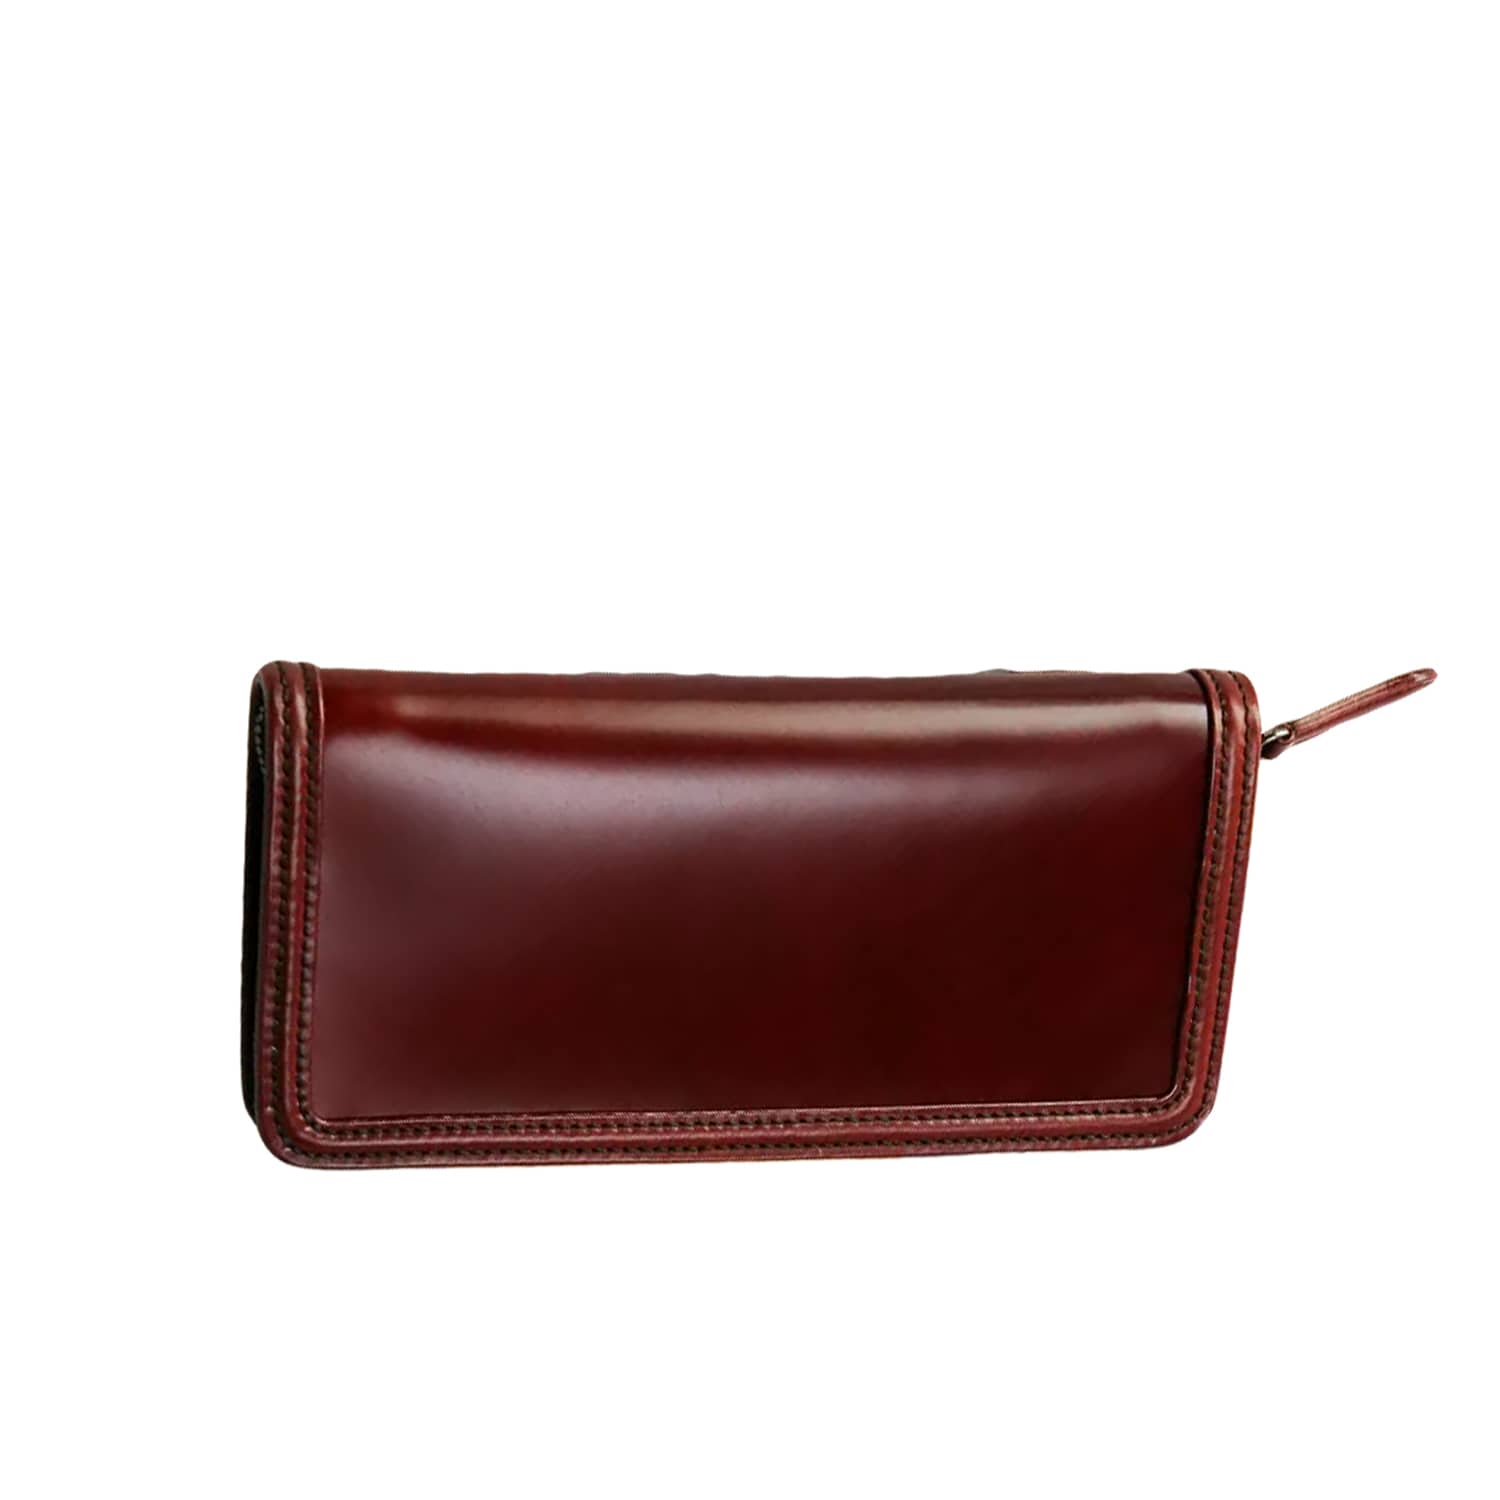 zip wallet red